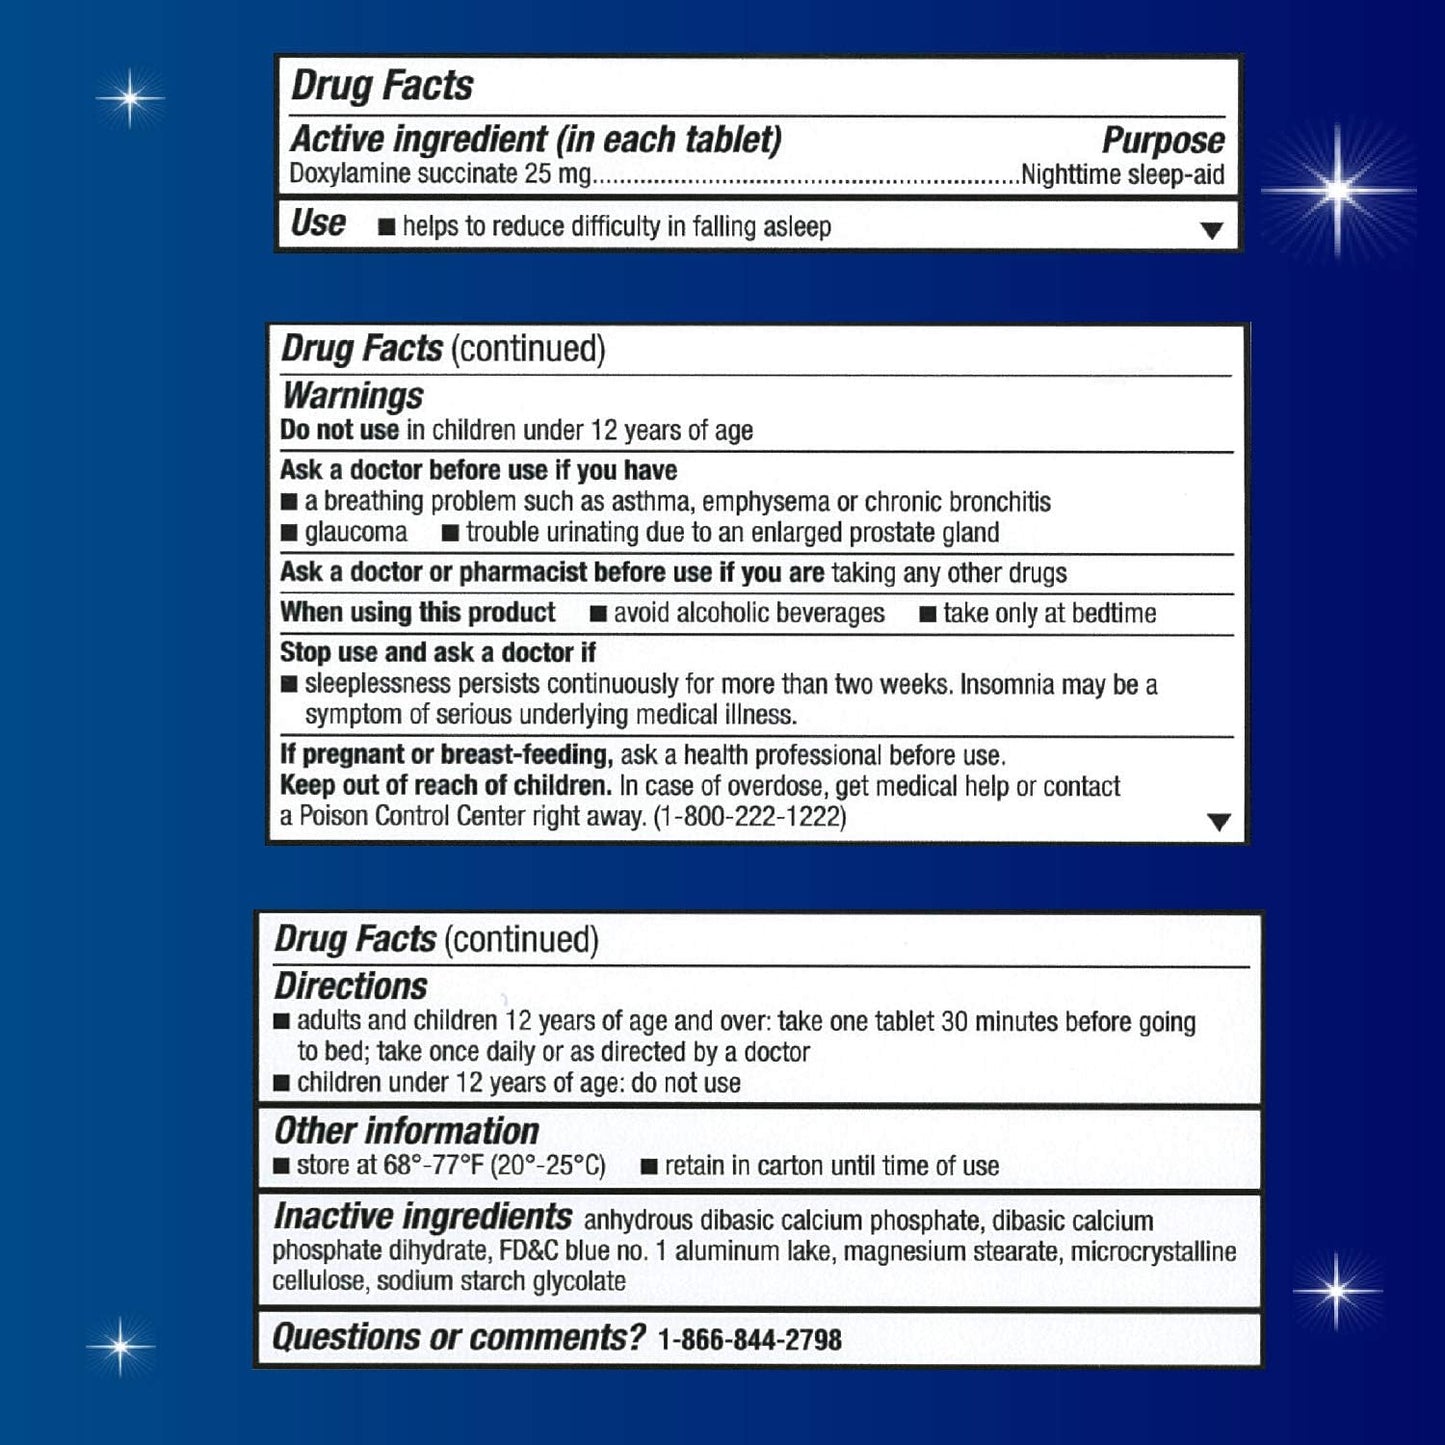 Unisom SleepTabs Nighttime Sleep-aid 48 Tablets 2 PACK